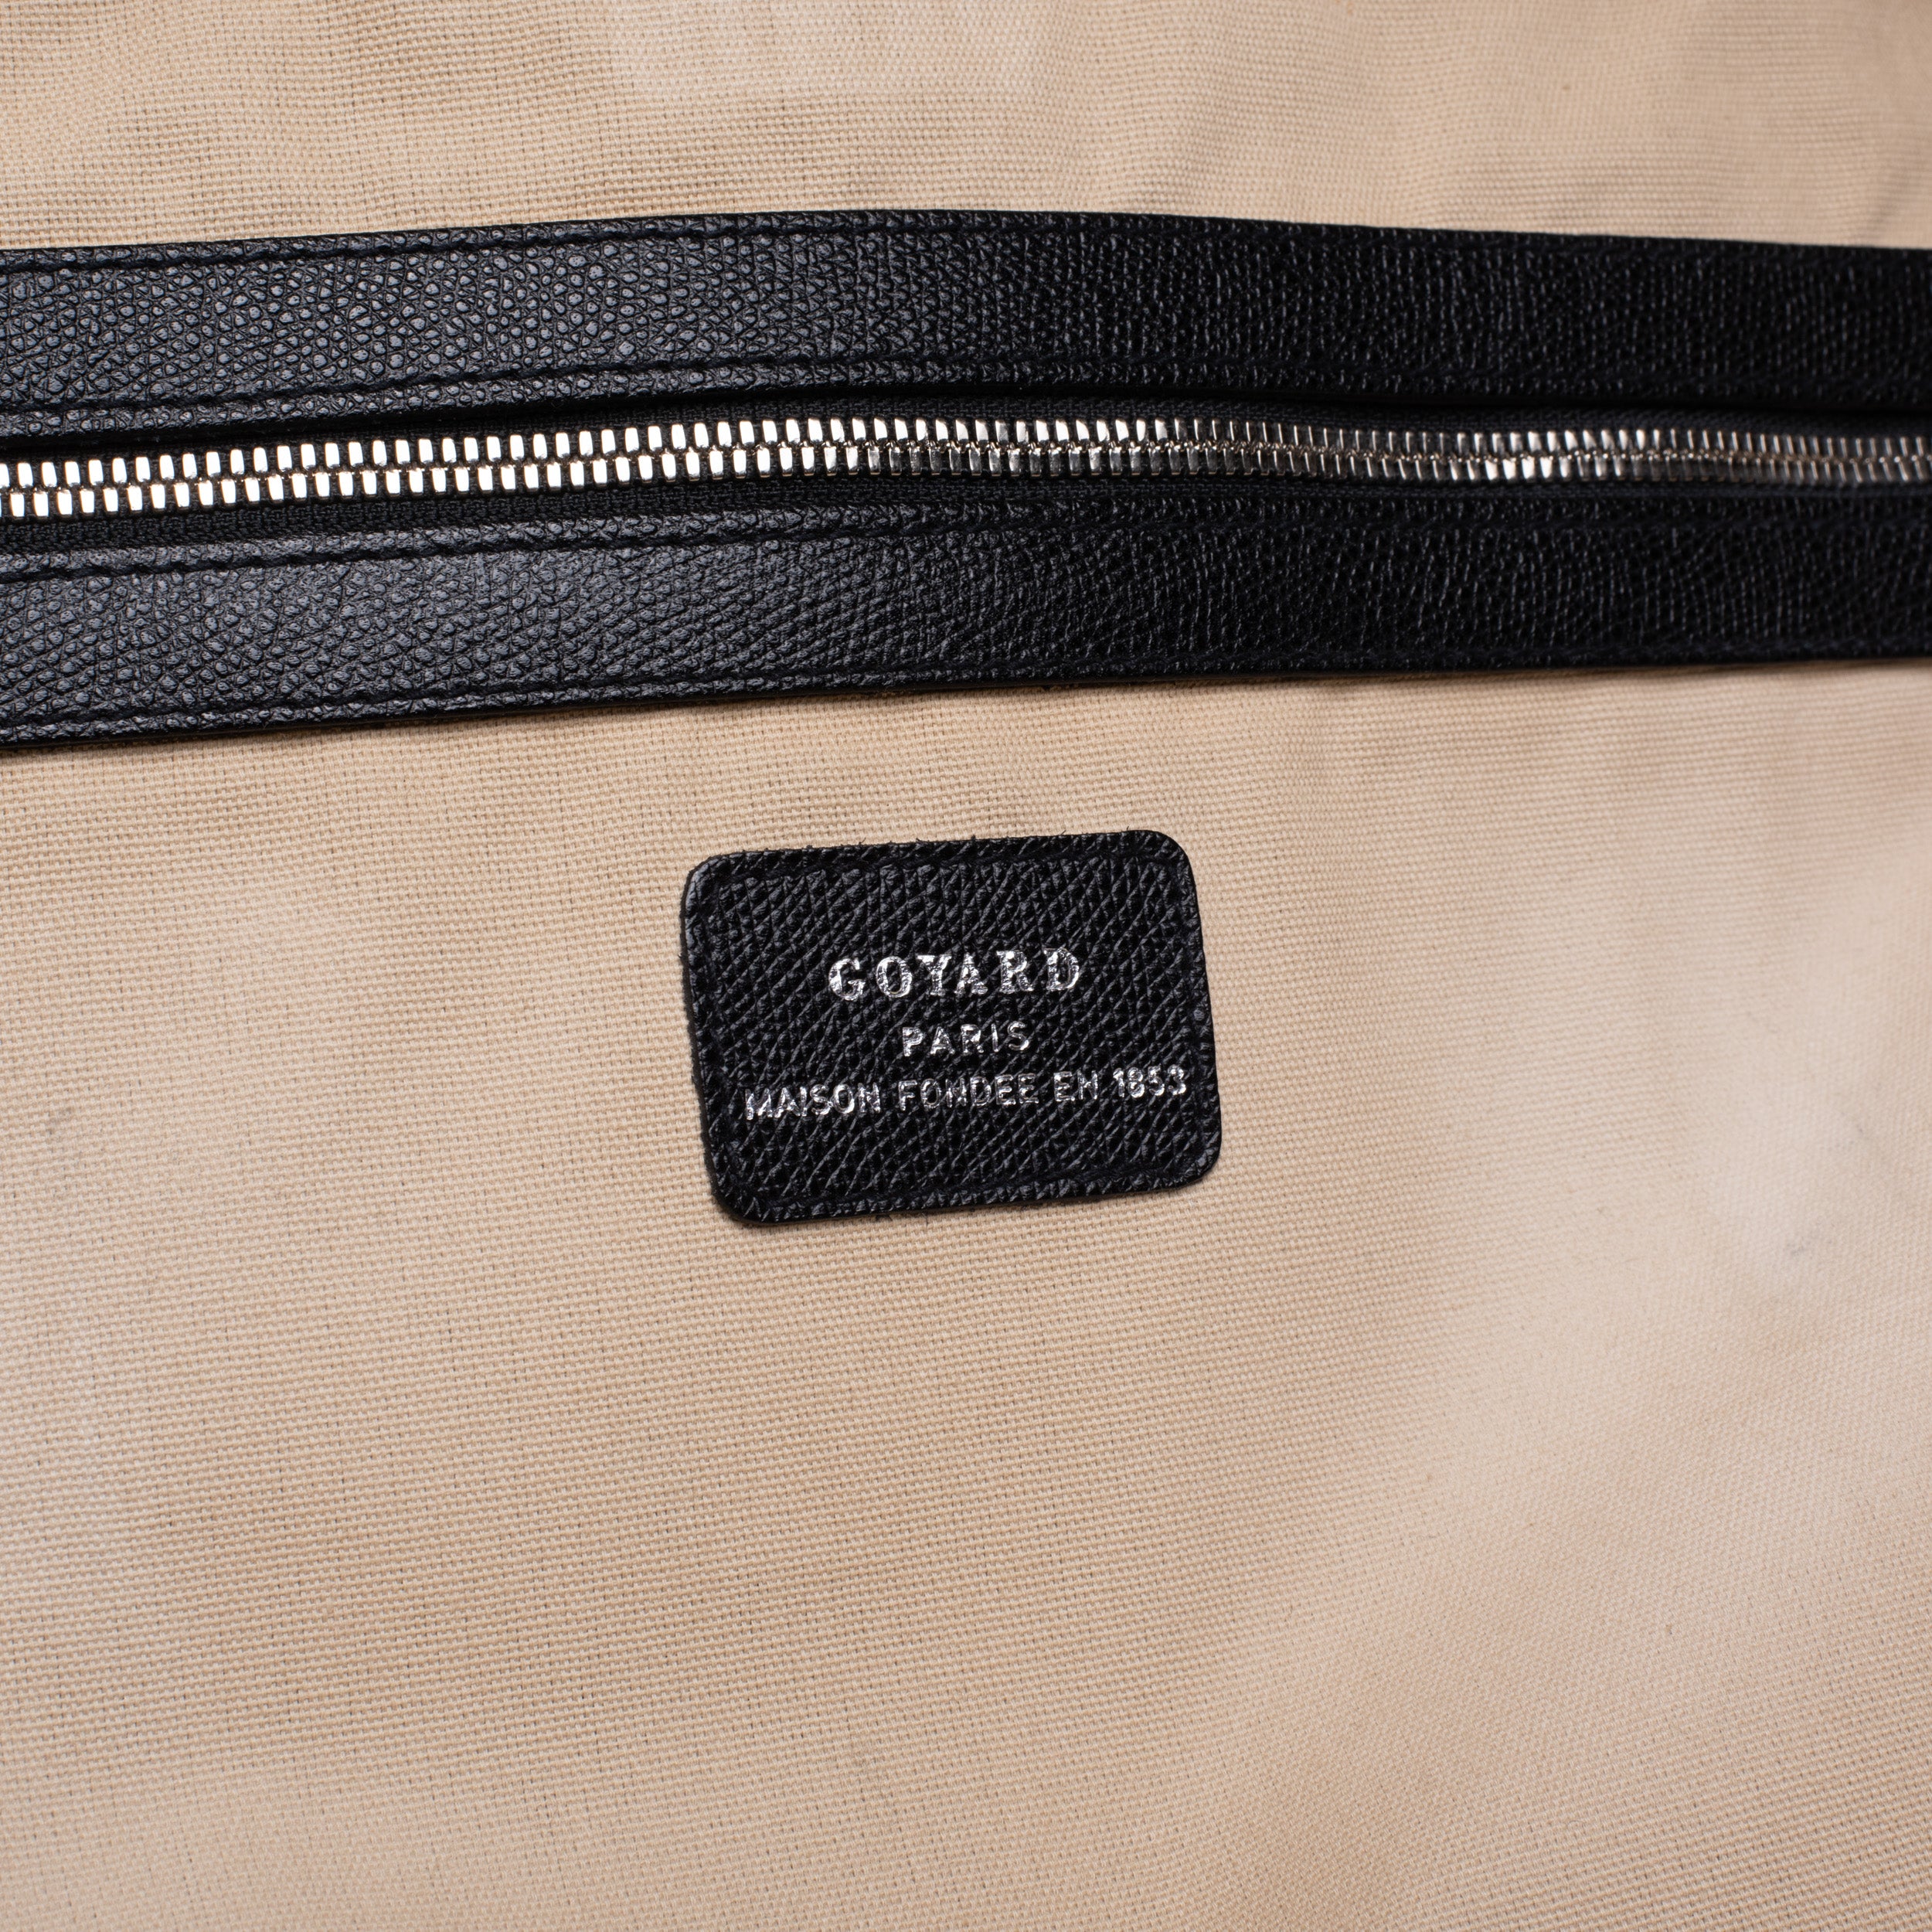 goyard laptop bag - Buy goyard laptop bag at Best Price in Malaysia